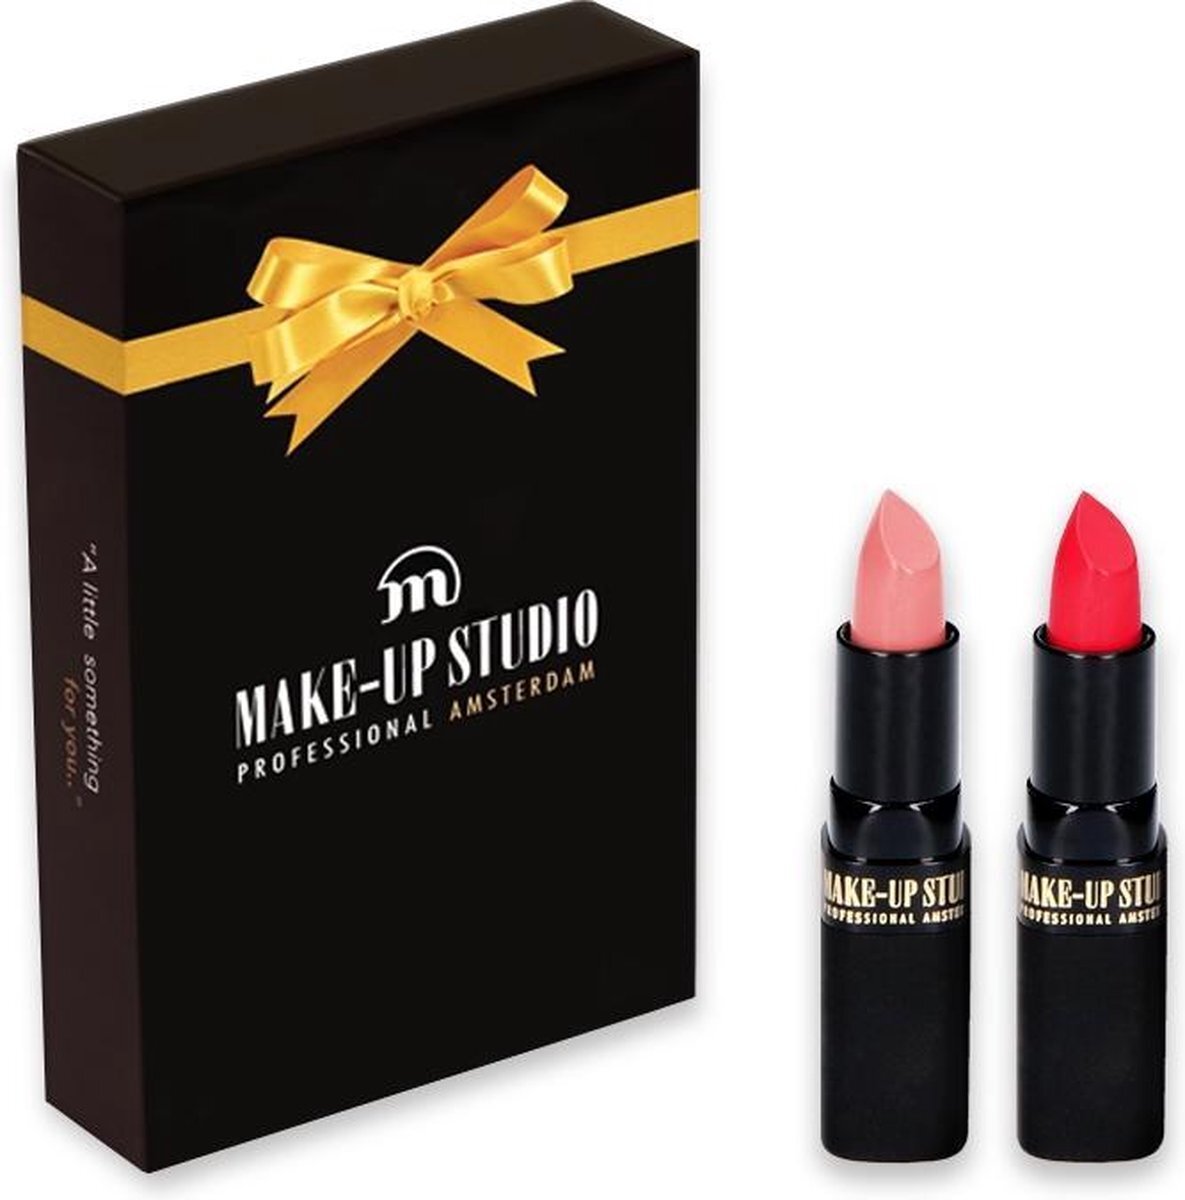 Make-up Studio - Kerst Giftbox vrouw met 2 producten - Lipstick Duo 53+ XOXO Red